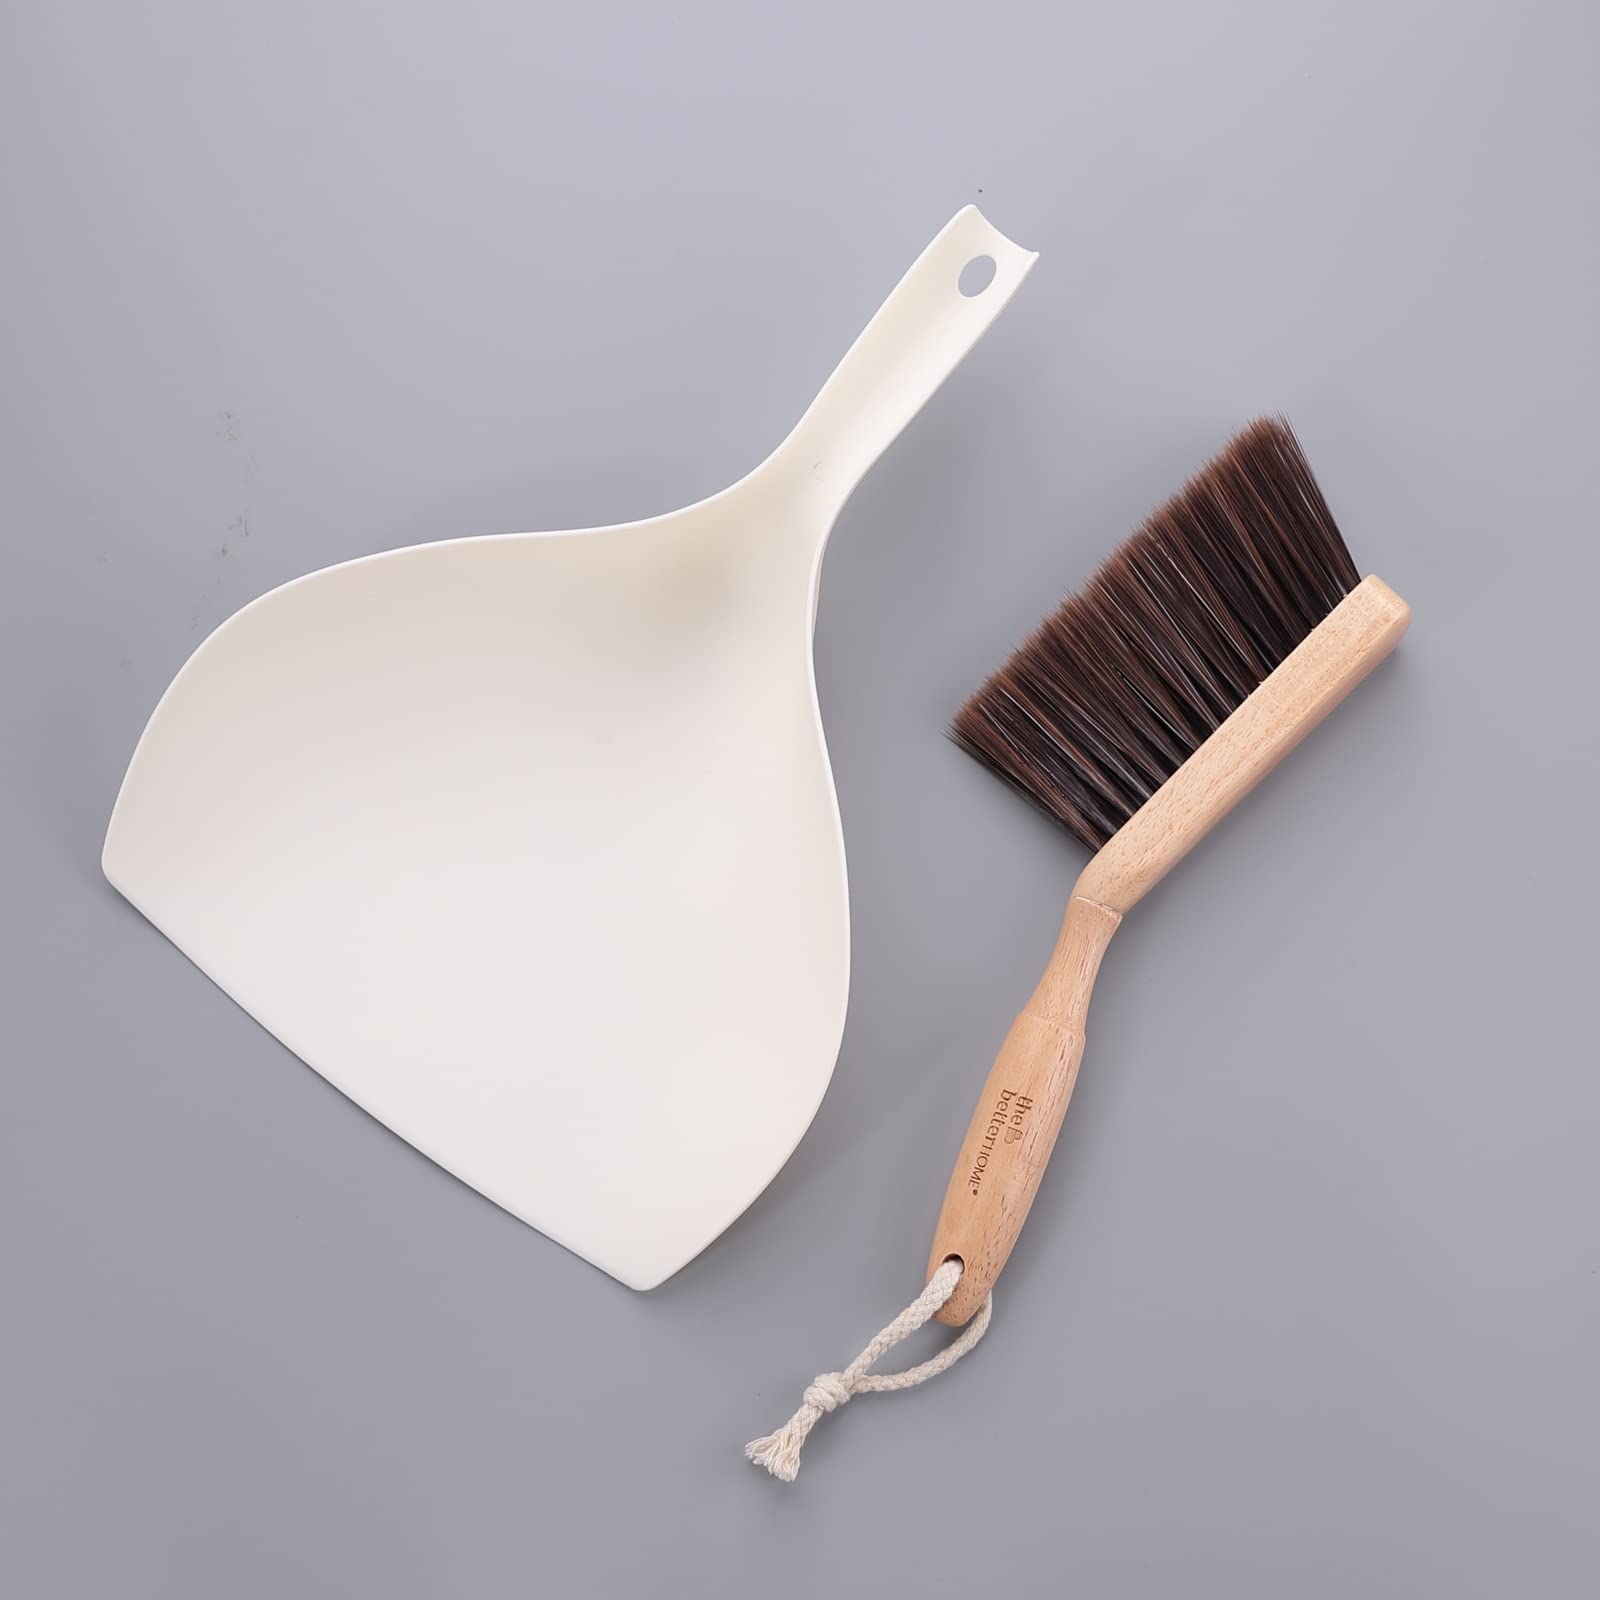 Dust Pan with Brush | Sleek Wooden Handle Dust Pan Table & Floor Cleaner Brush